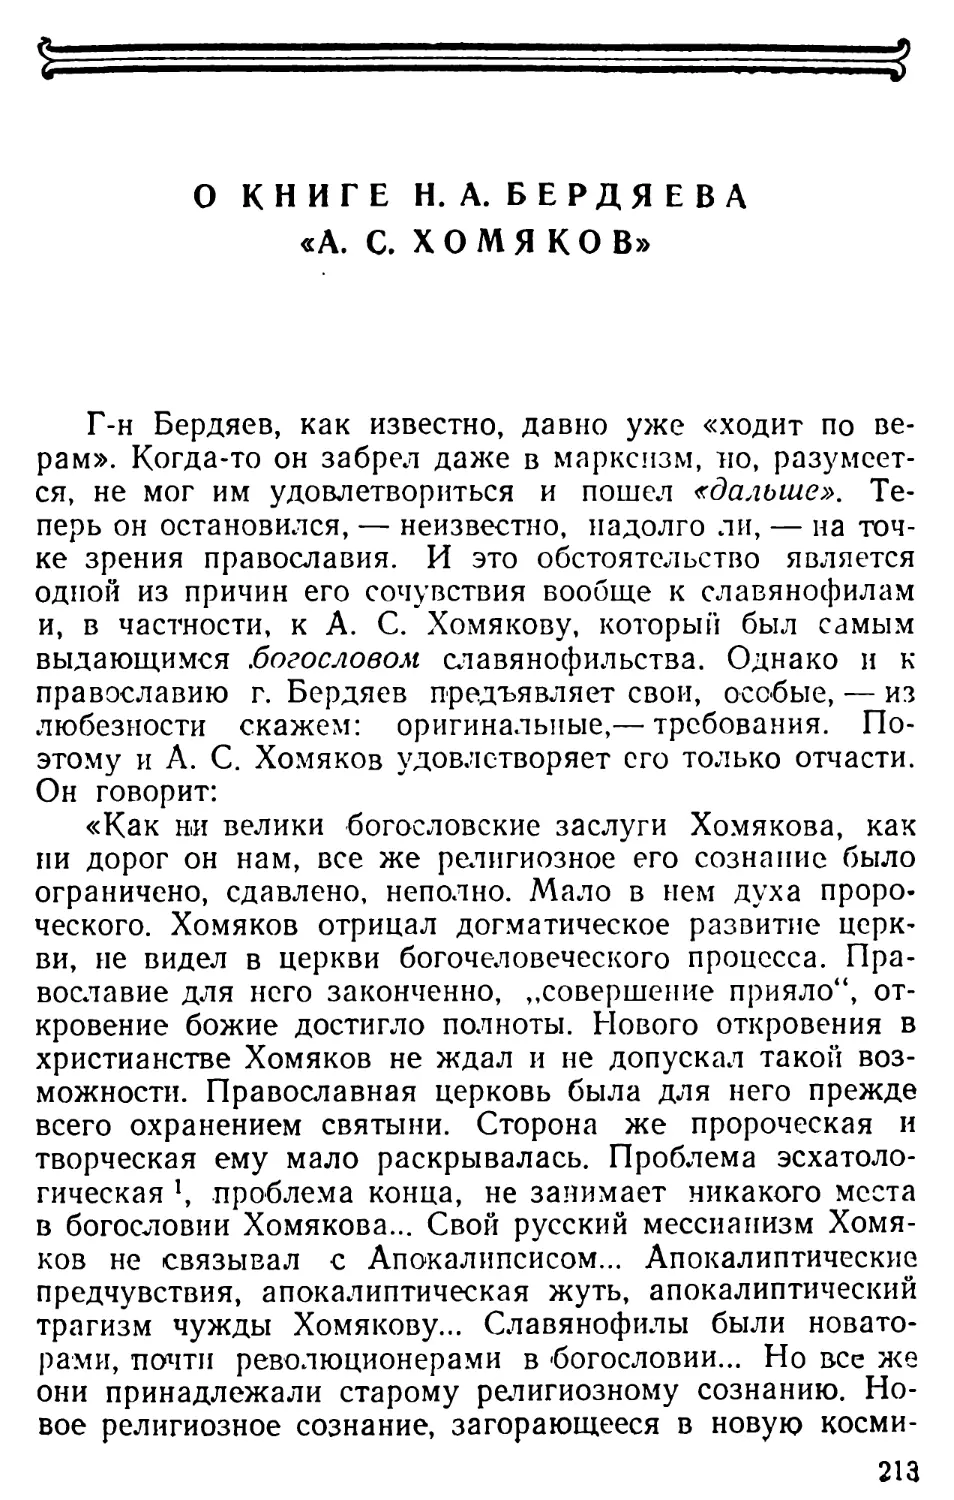 О книге Н. А. Бердяева «А.С. Хомяков»